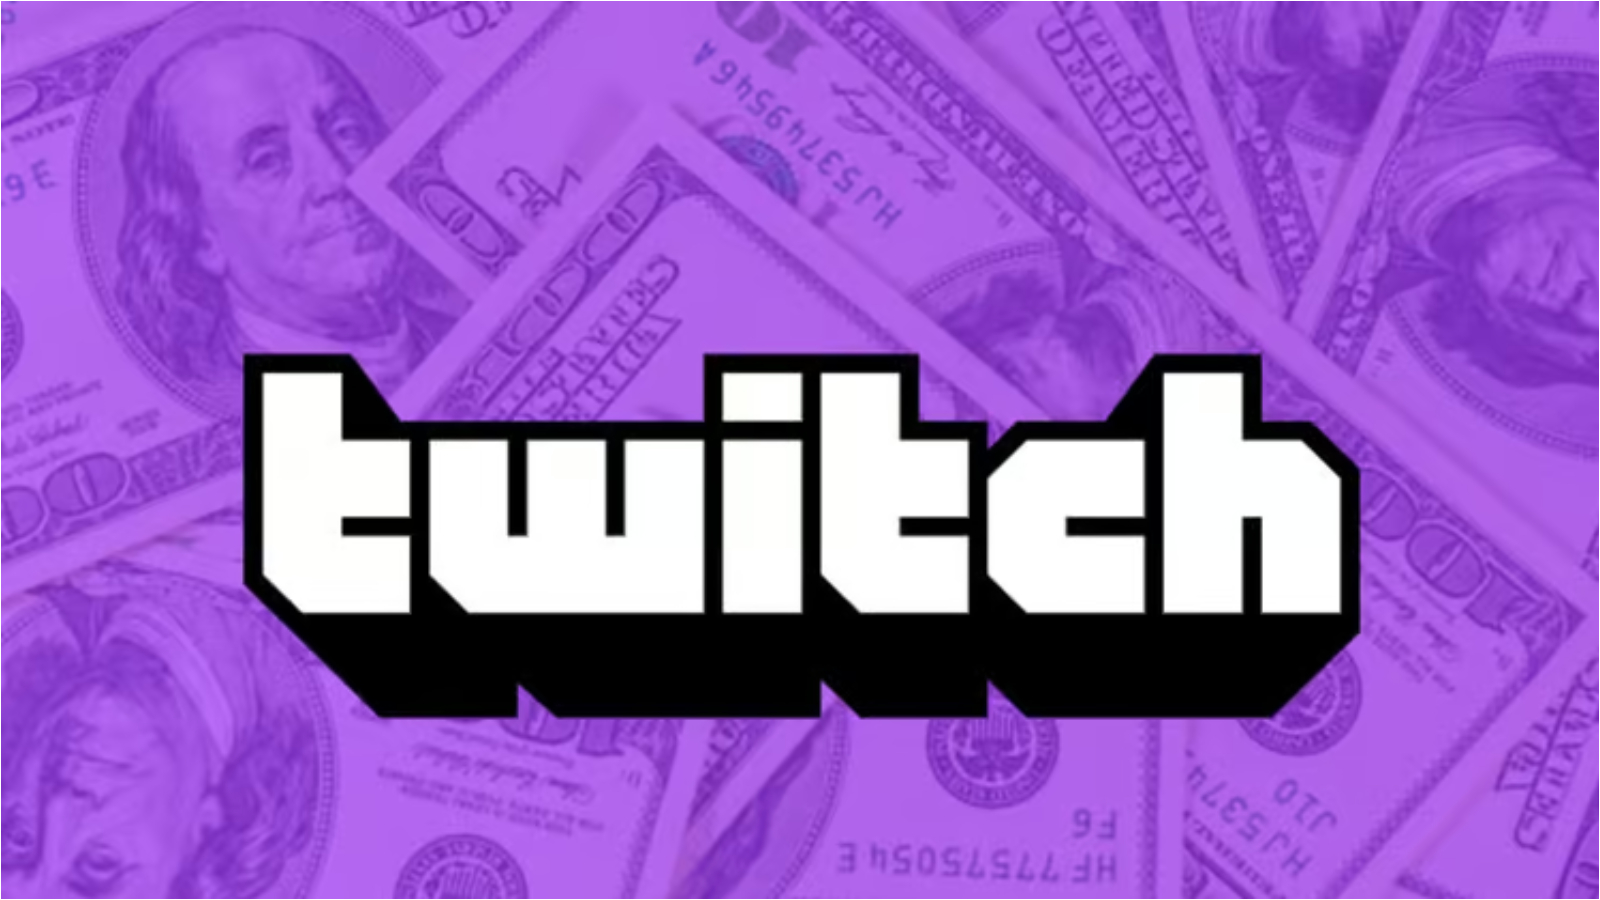 Twitch повышает стоимость подписки более чем в 30 странах, включая на 1 доллар больше в США